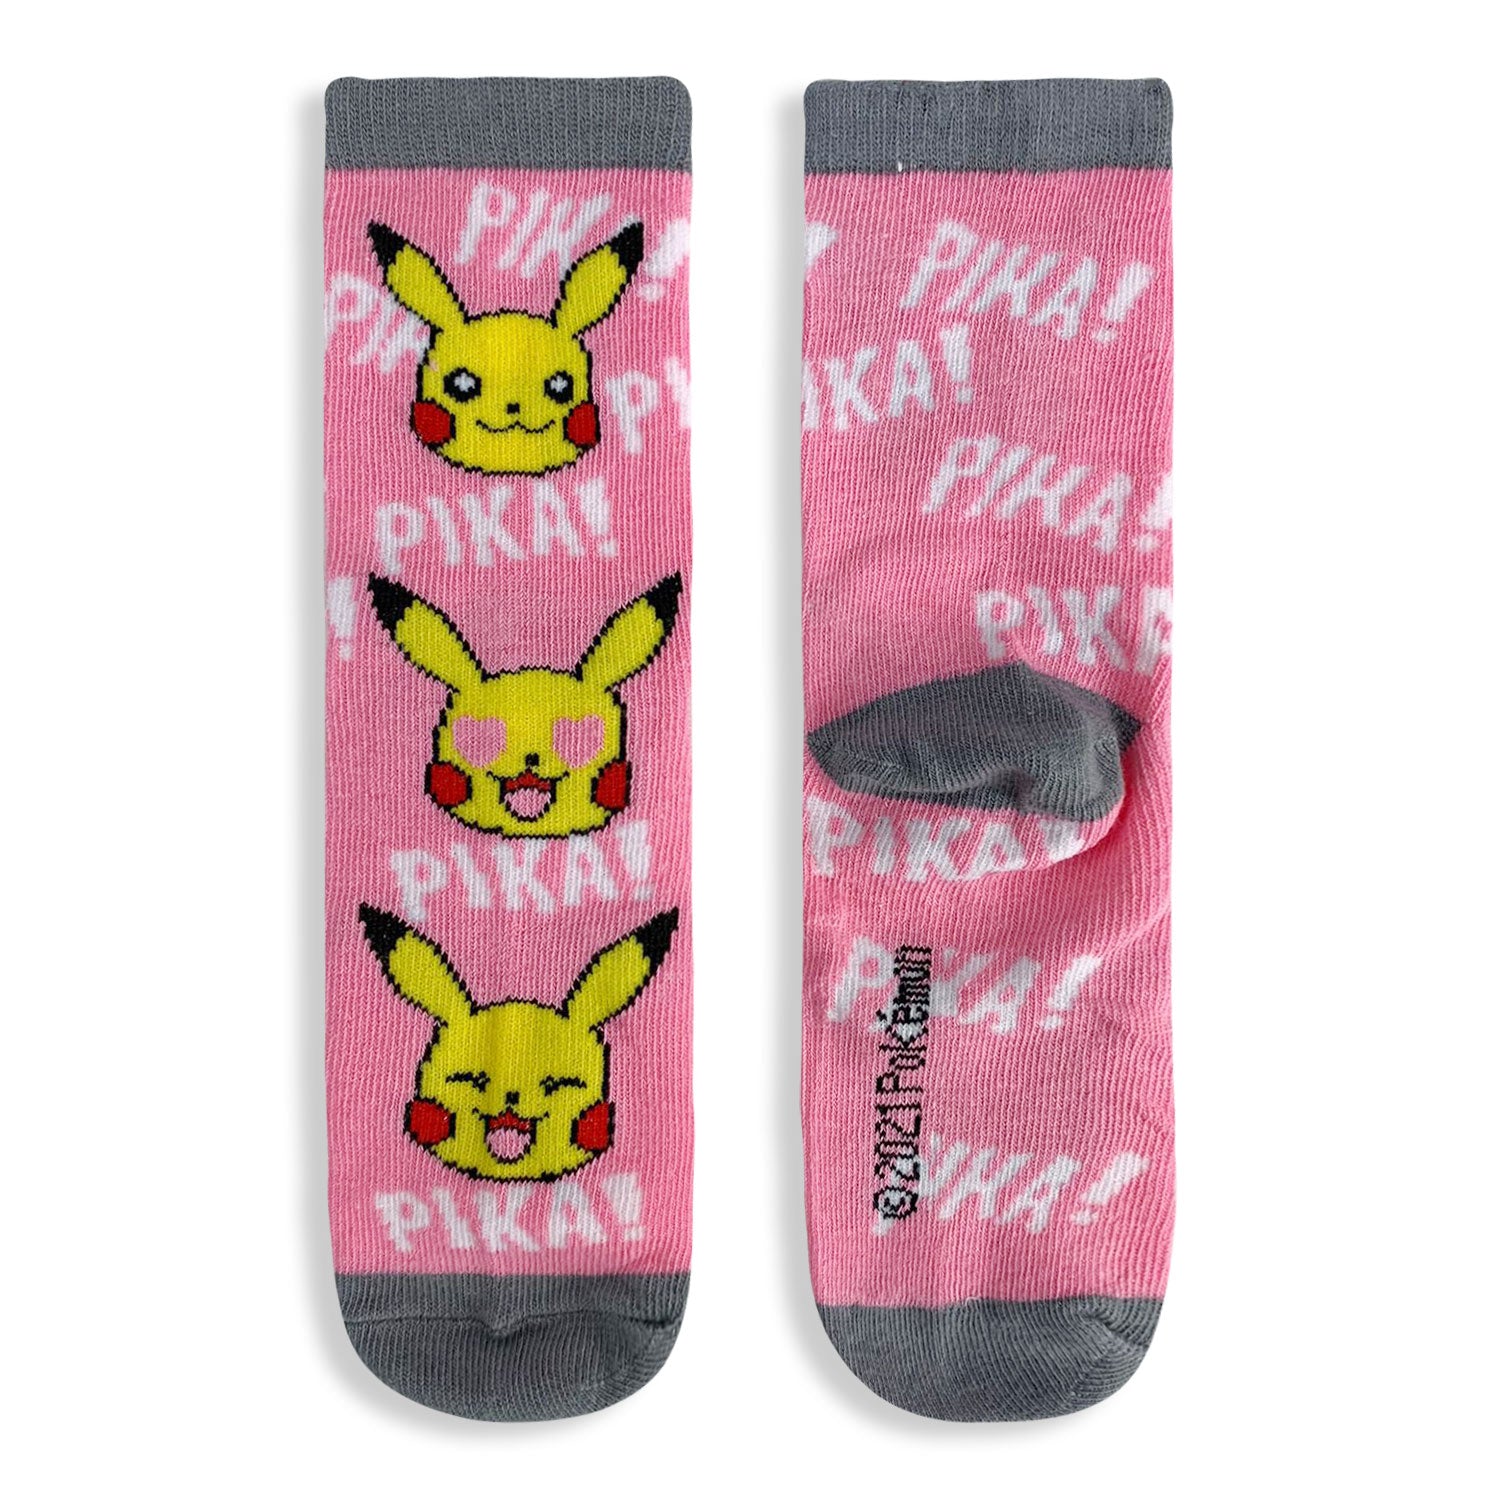 Calzini lunghi Pokemon pikachu 3 paia per bambina in filato cotone stampati 4832